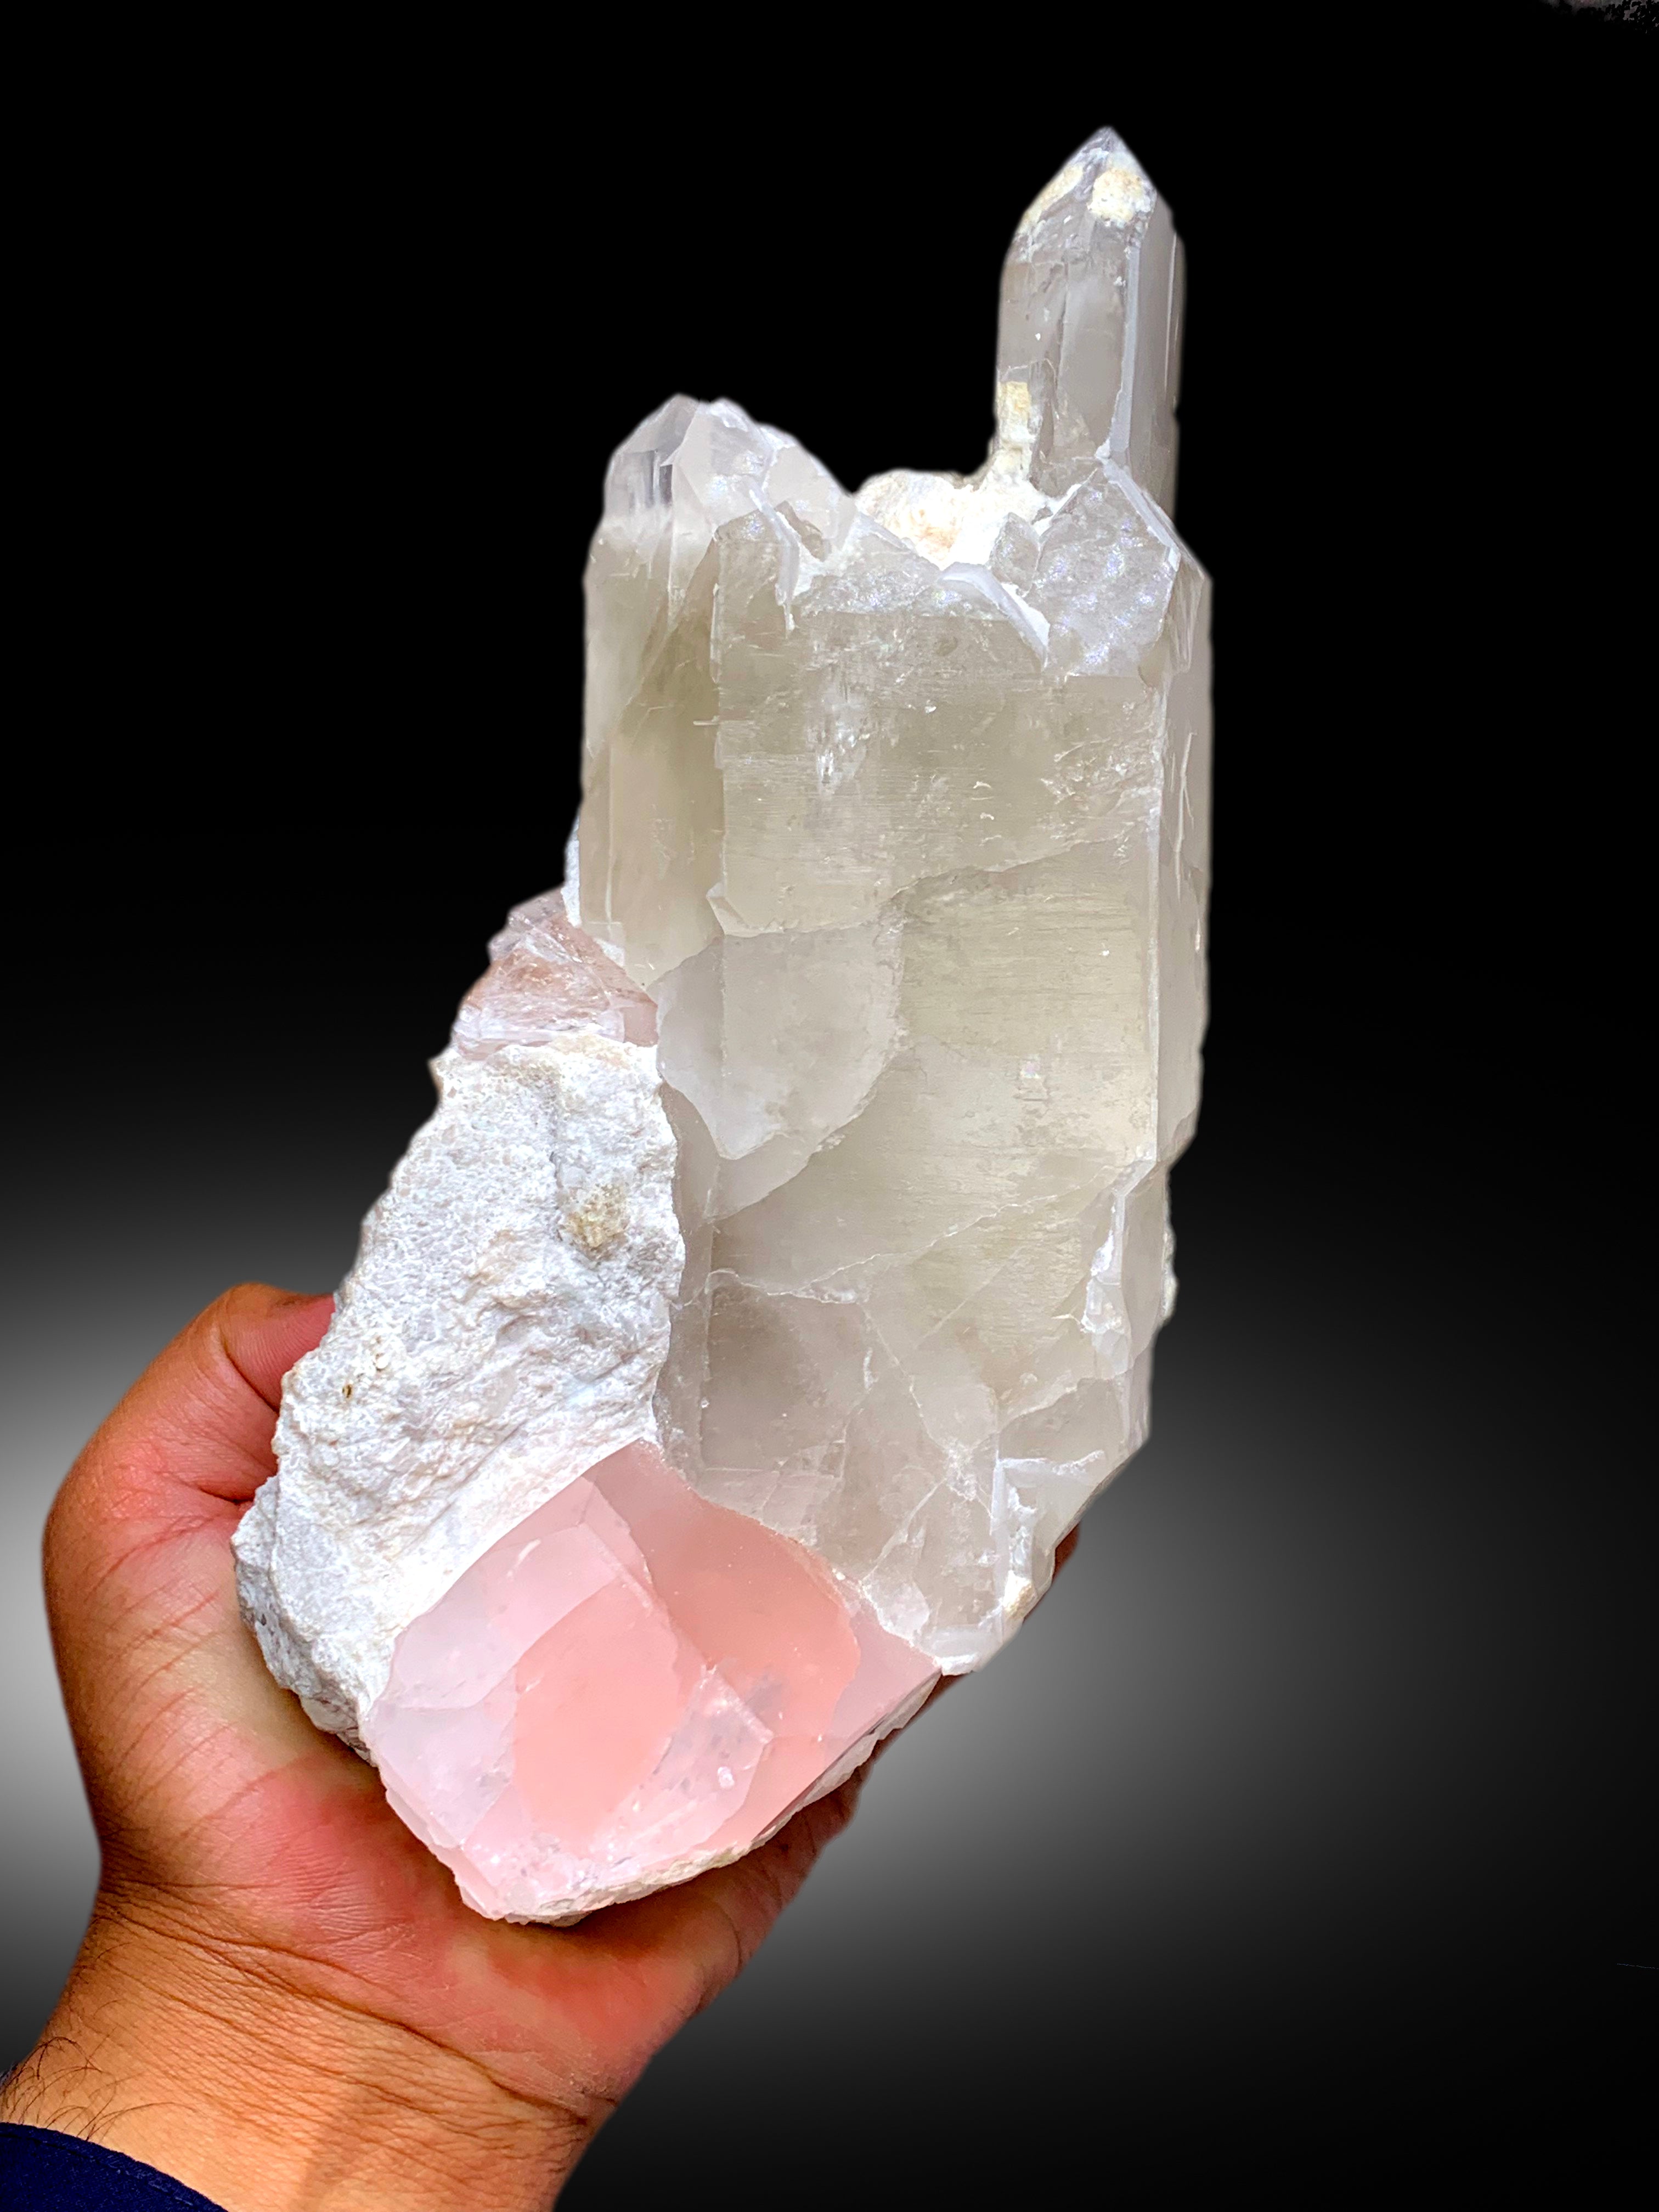 Natural Pink Morganite Crystal on Quartz, Morganite Specimen, Raw Mineral, Morganite from Dara-i-Pech Afghanistan - 2365 gram